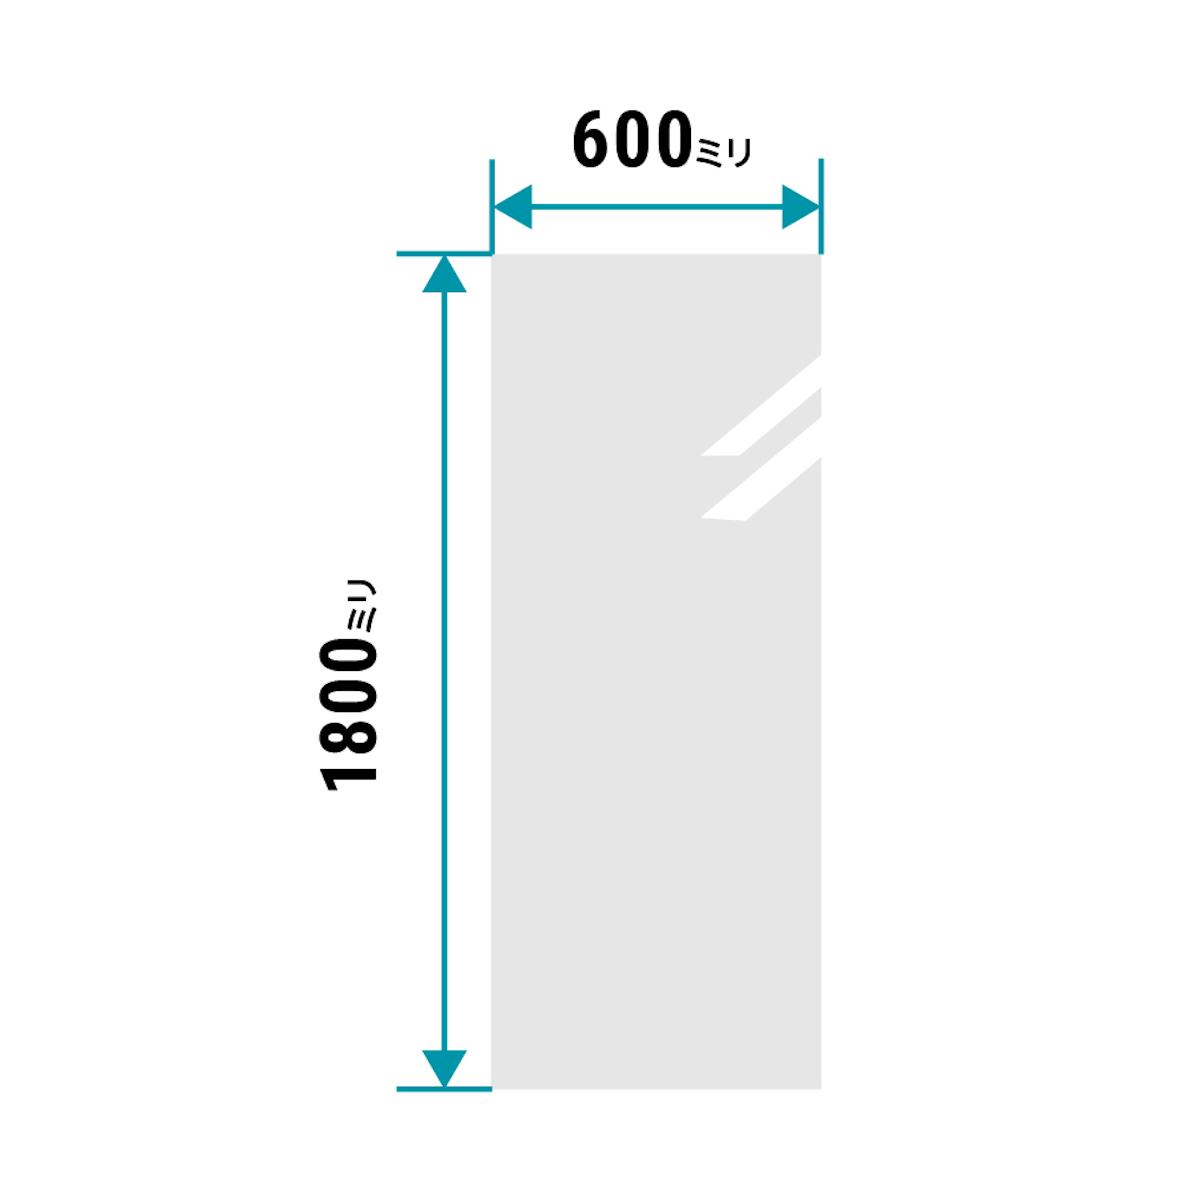 全身が映る「姿見用ガラスミラー 」のサイズで二番目に人気なのは、600ミリ×1800ミリ